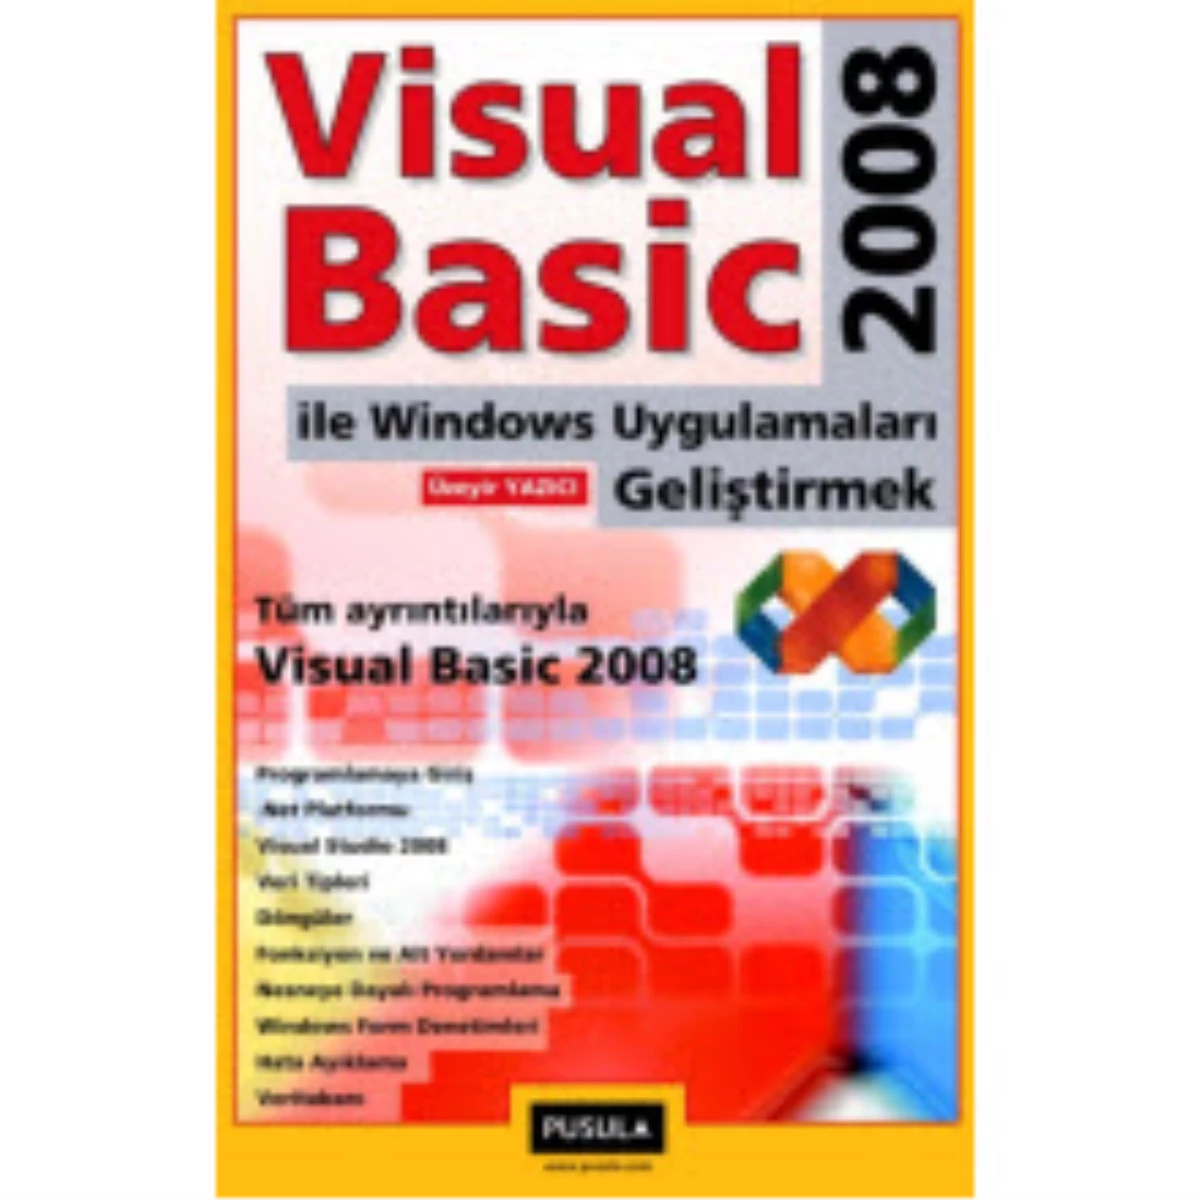 Visual Basic 2008 ile Programcılığa İlk Adımı Atın